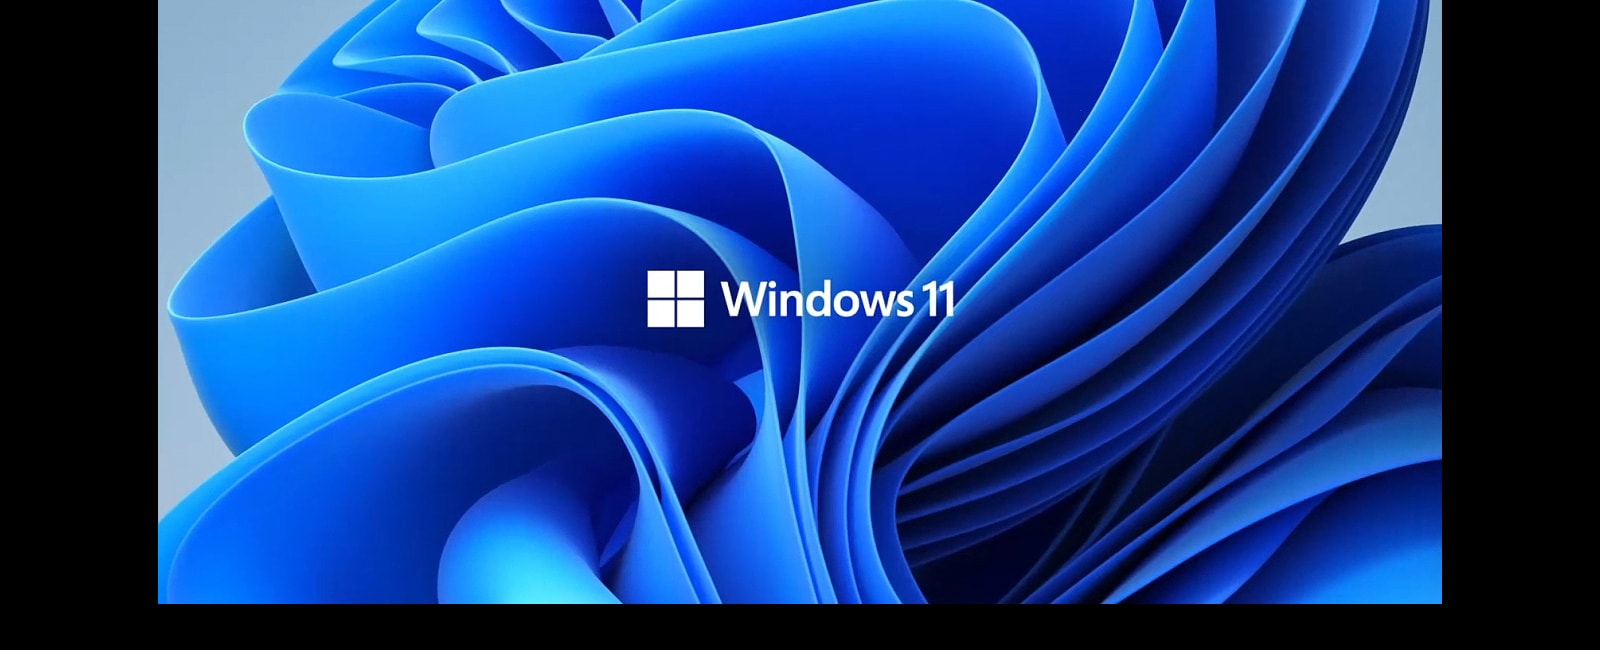 Przedstawia logo Windows11 i obraz tła.